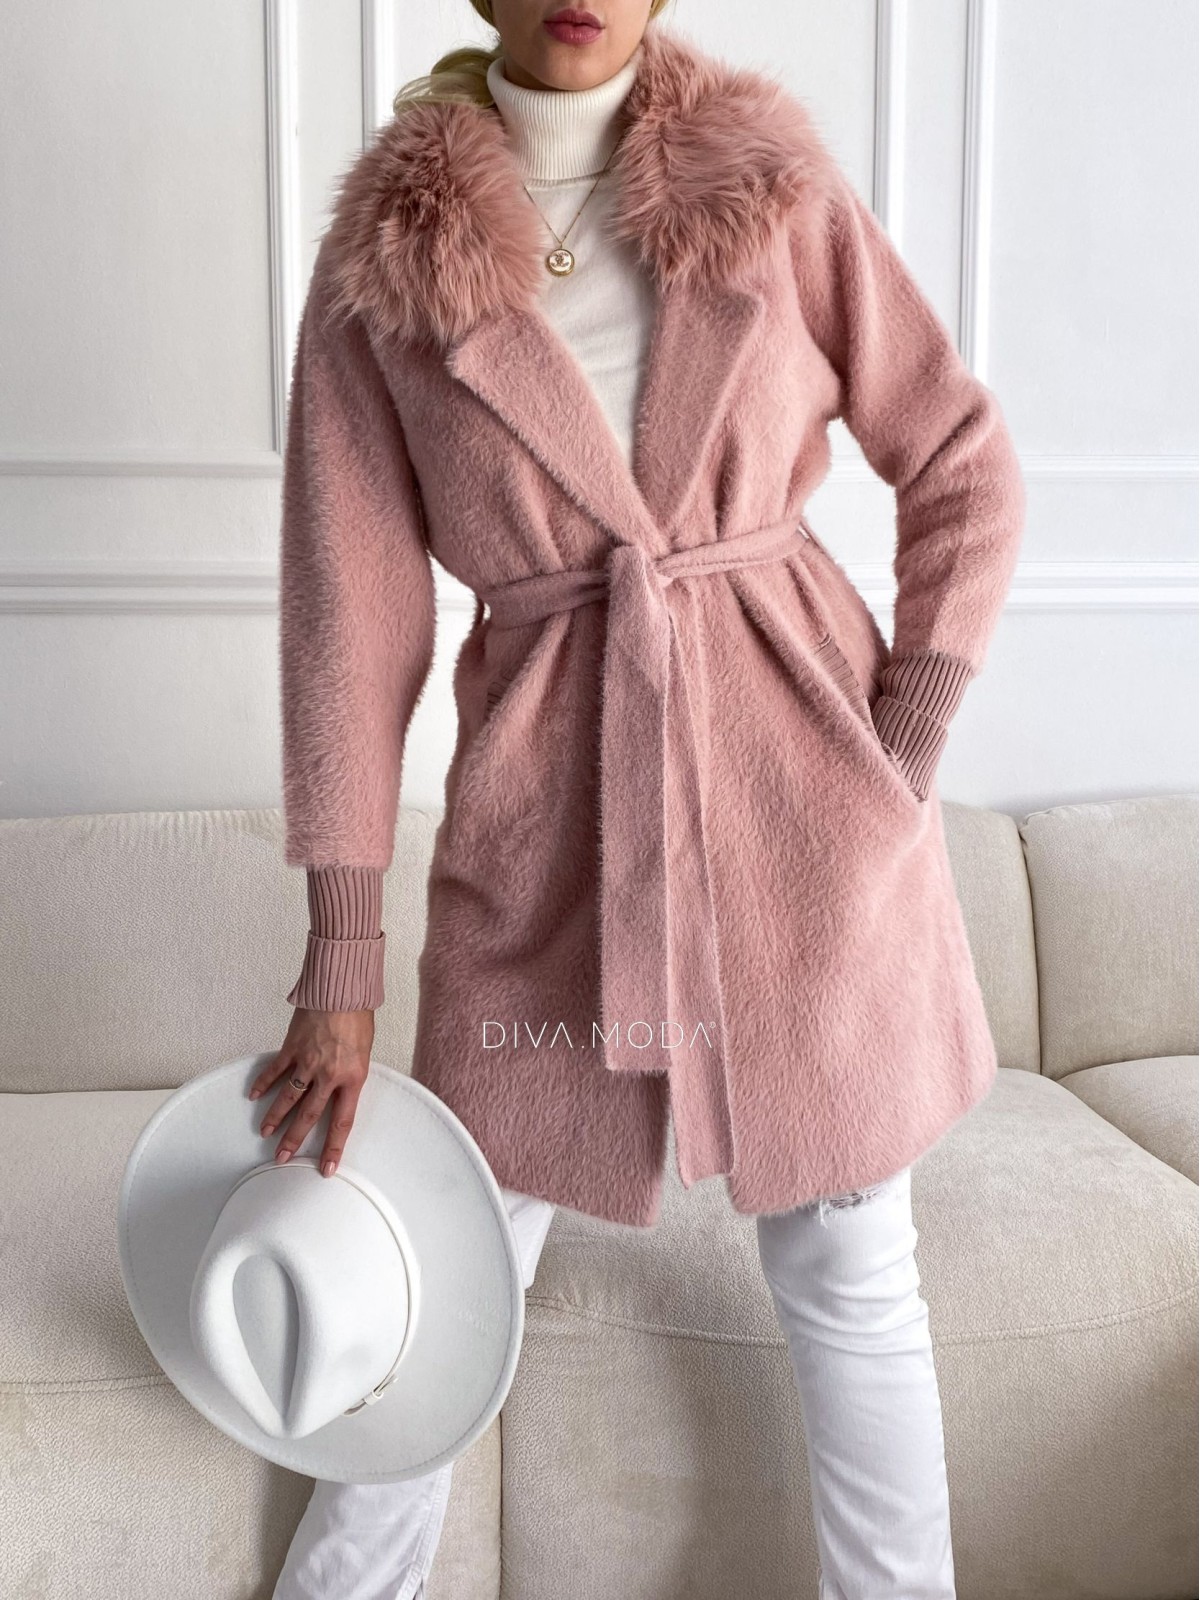 Alpaka kabát s kožešinou a páskem pudrově růžový S 68